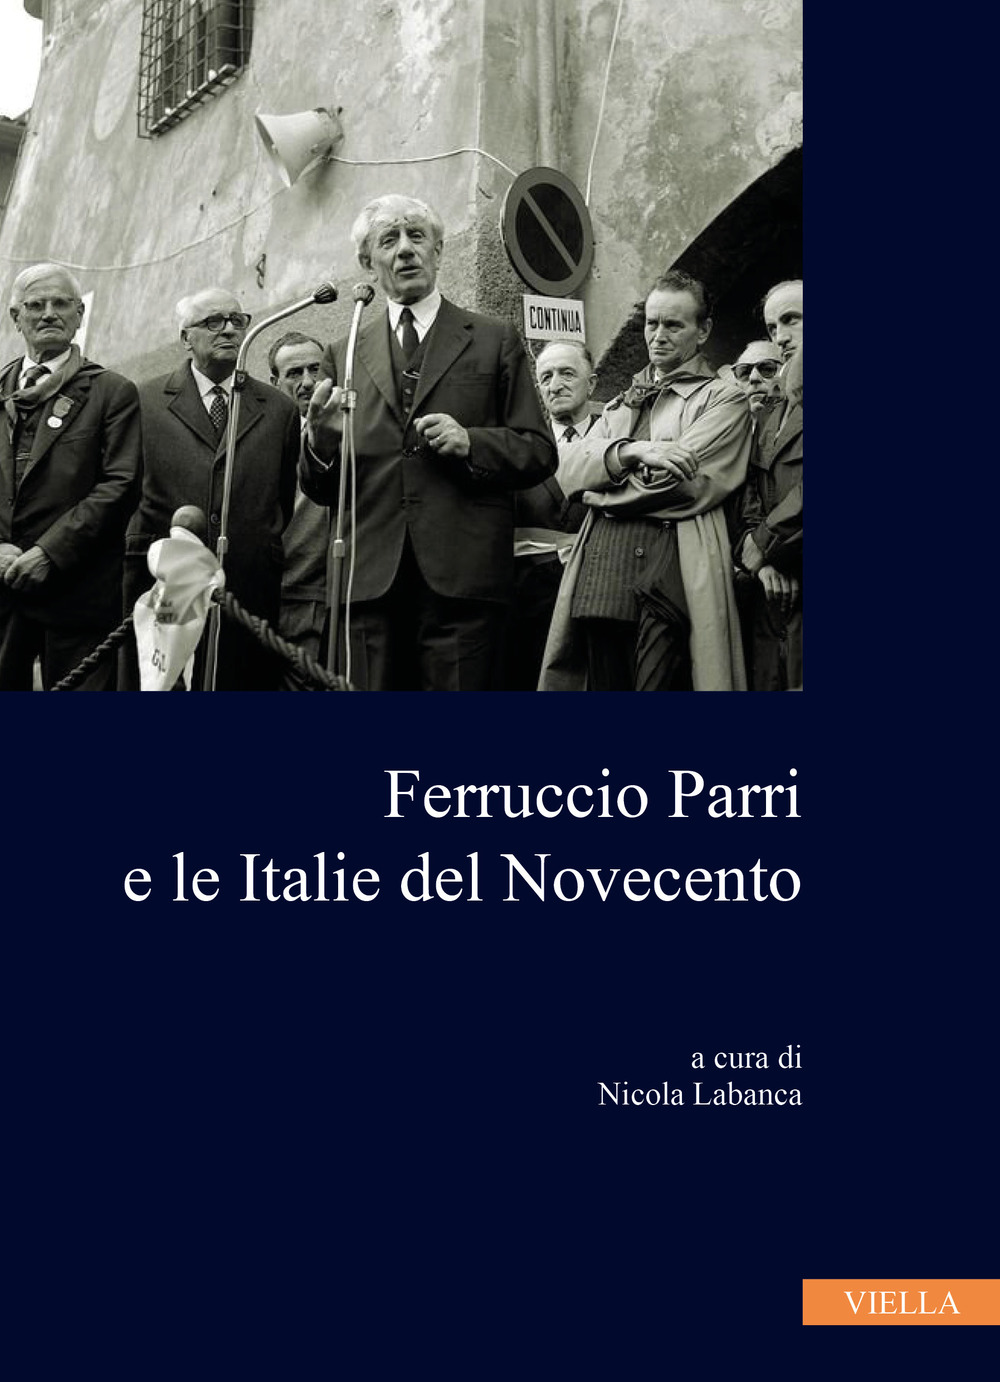 Ferruccio Parri e le italie del Novecento